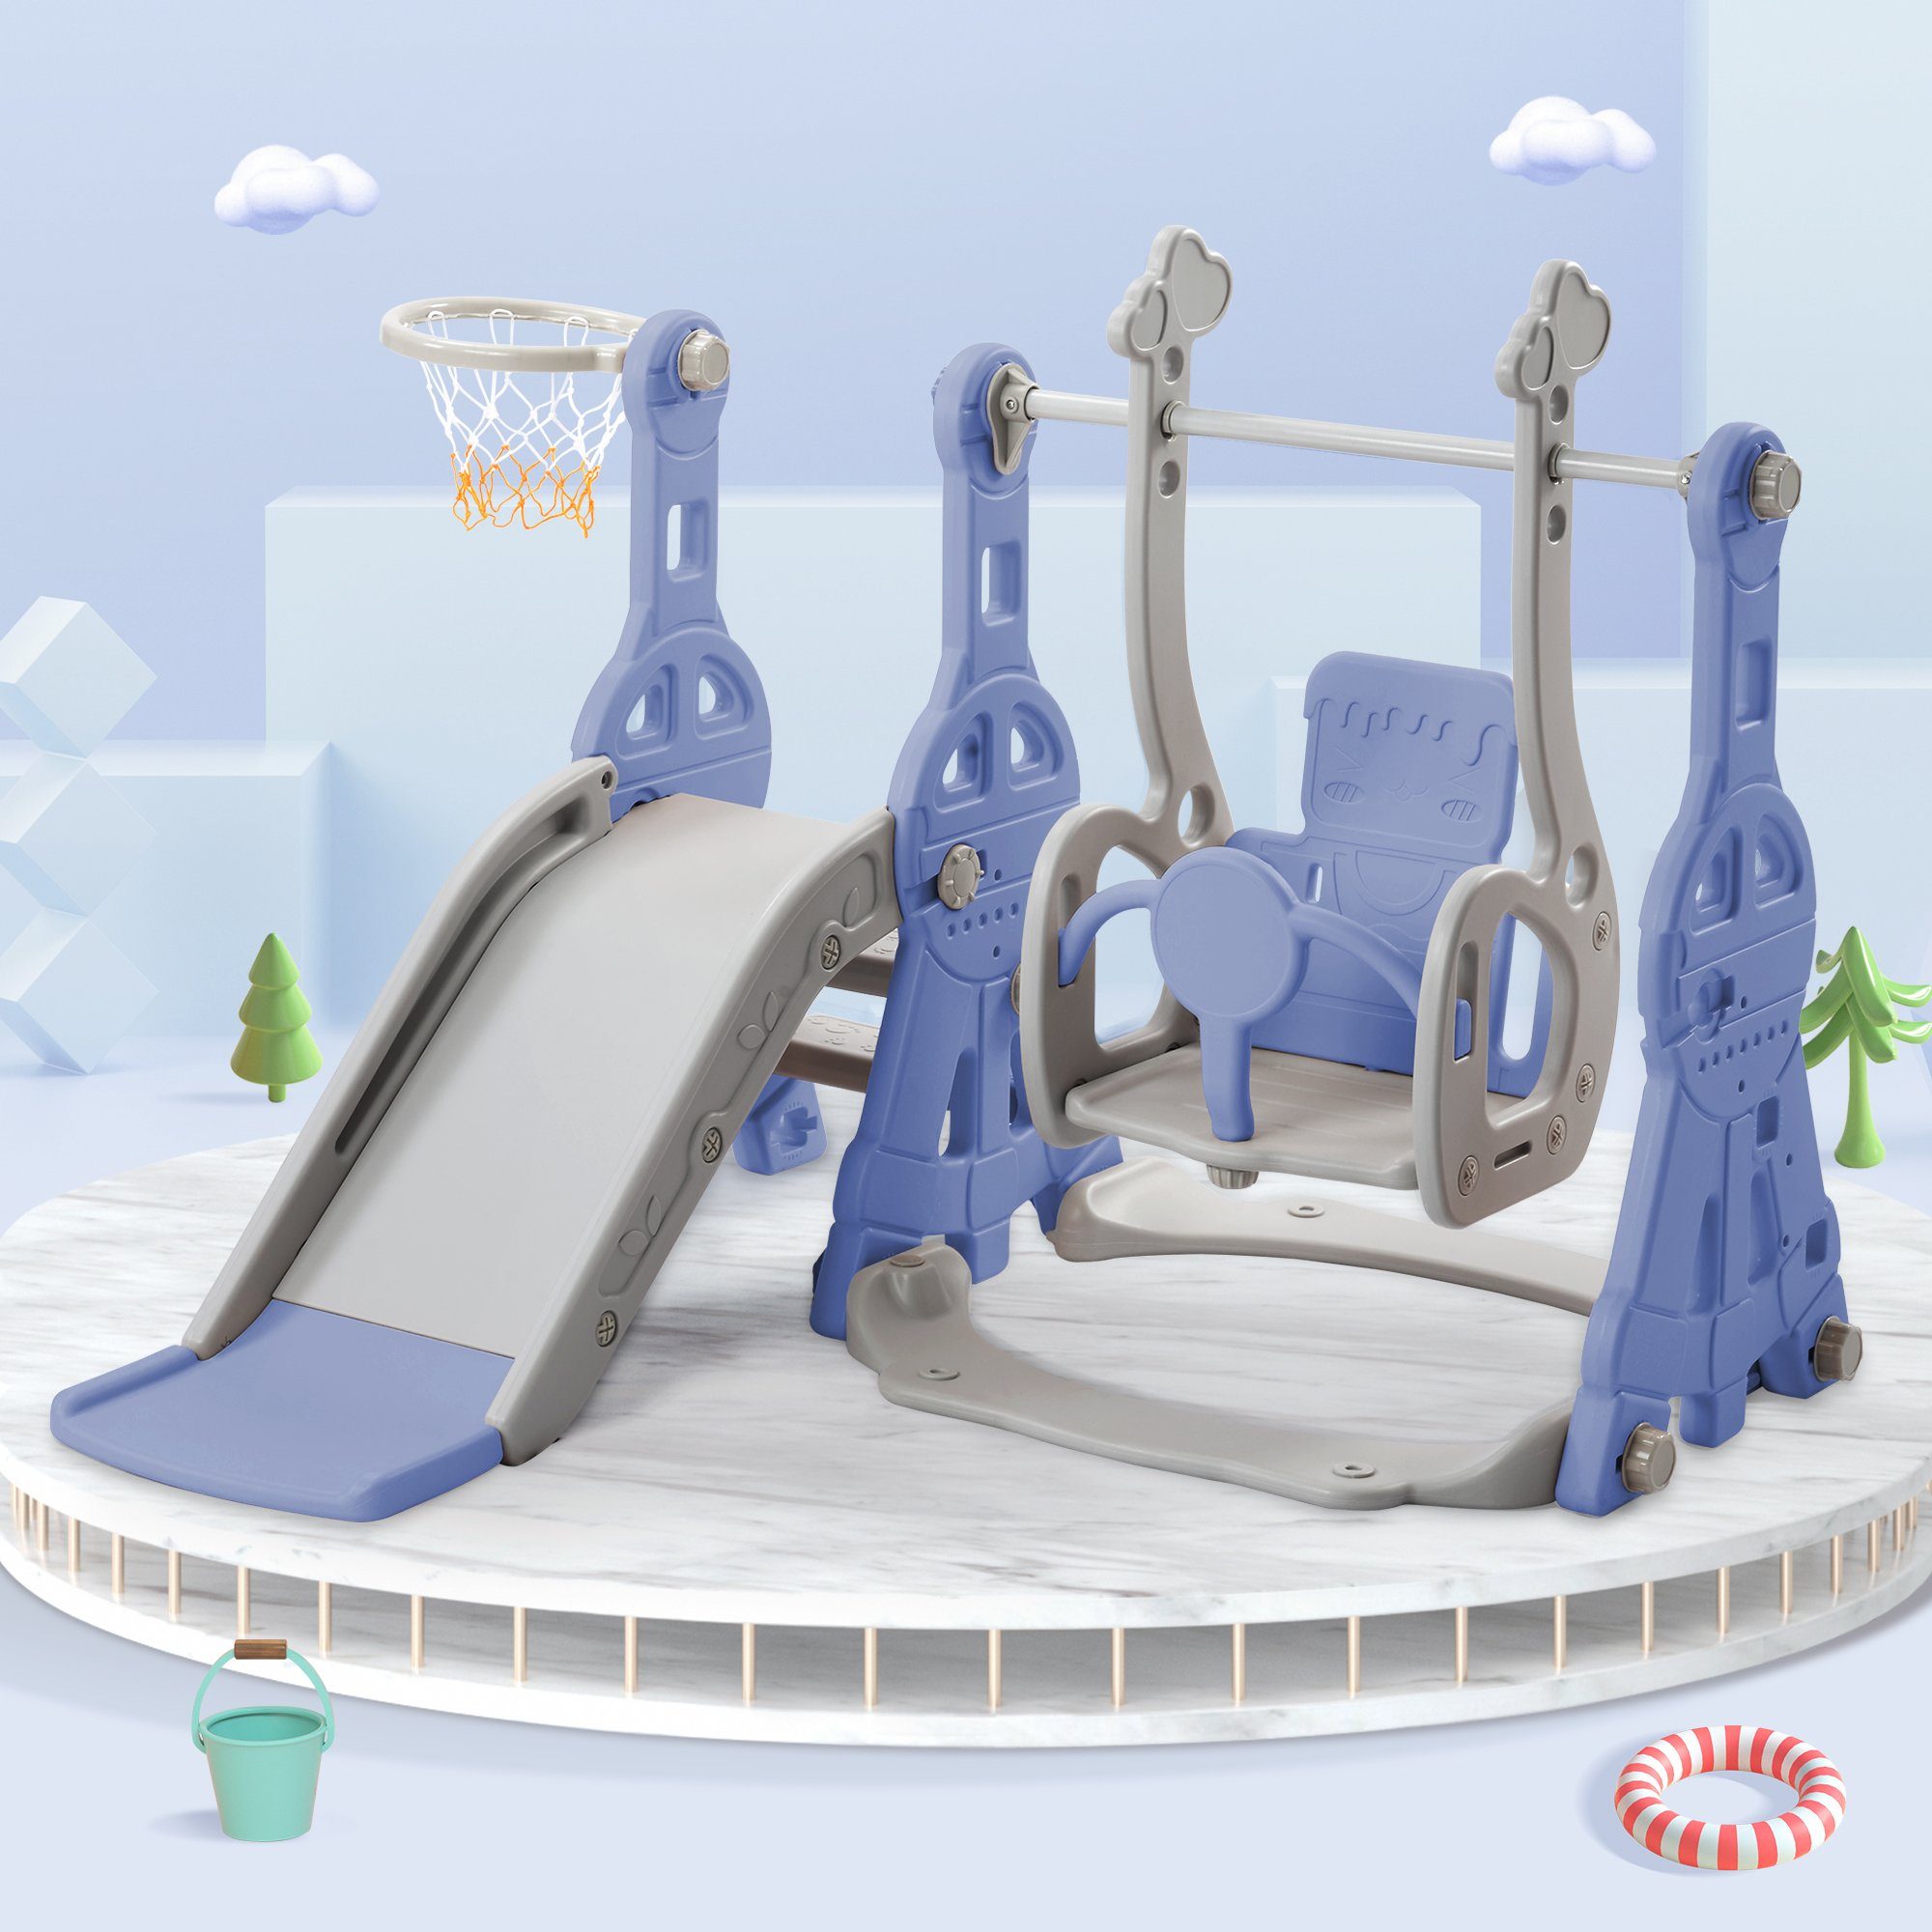 REDOM Indoor-Rutsche 4 in 1 Rutsche Kinderrutsche Fun-Slide Schaukel mit Basketballkorb, (Schaukel Rutsche Gartenrutsche mit Rutschbahn), für 1-6 Jahre Kinder Indoor & Outdoor Dunkelblau